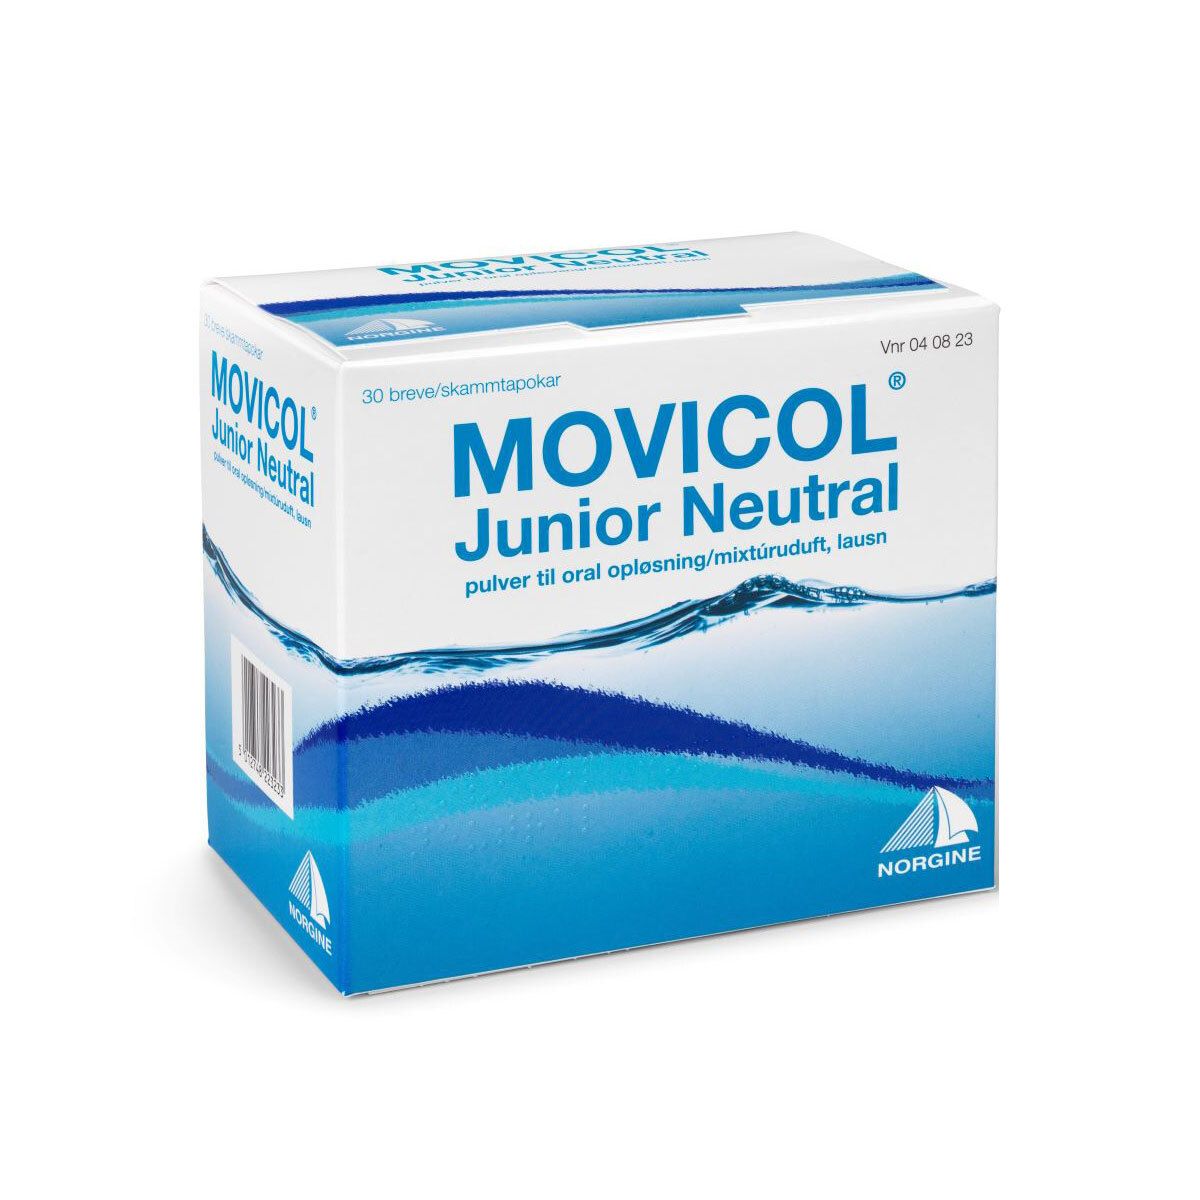 Stirre bestyrelse Indstilling Movicol Junior Neutral - 30 stk - Med24.dk